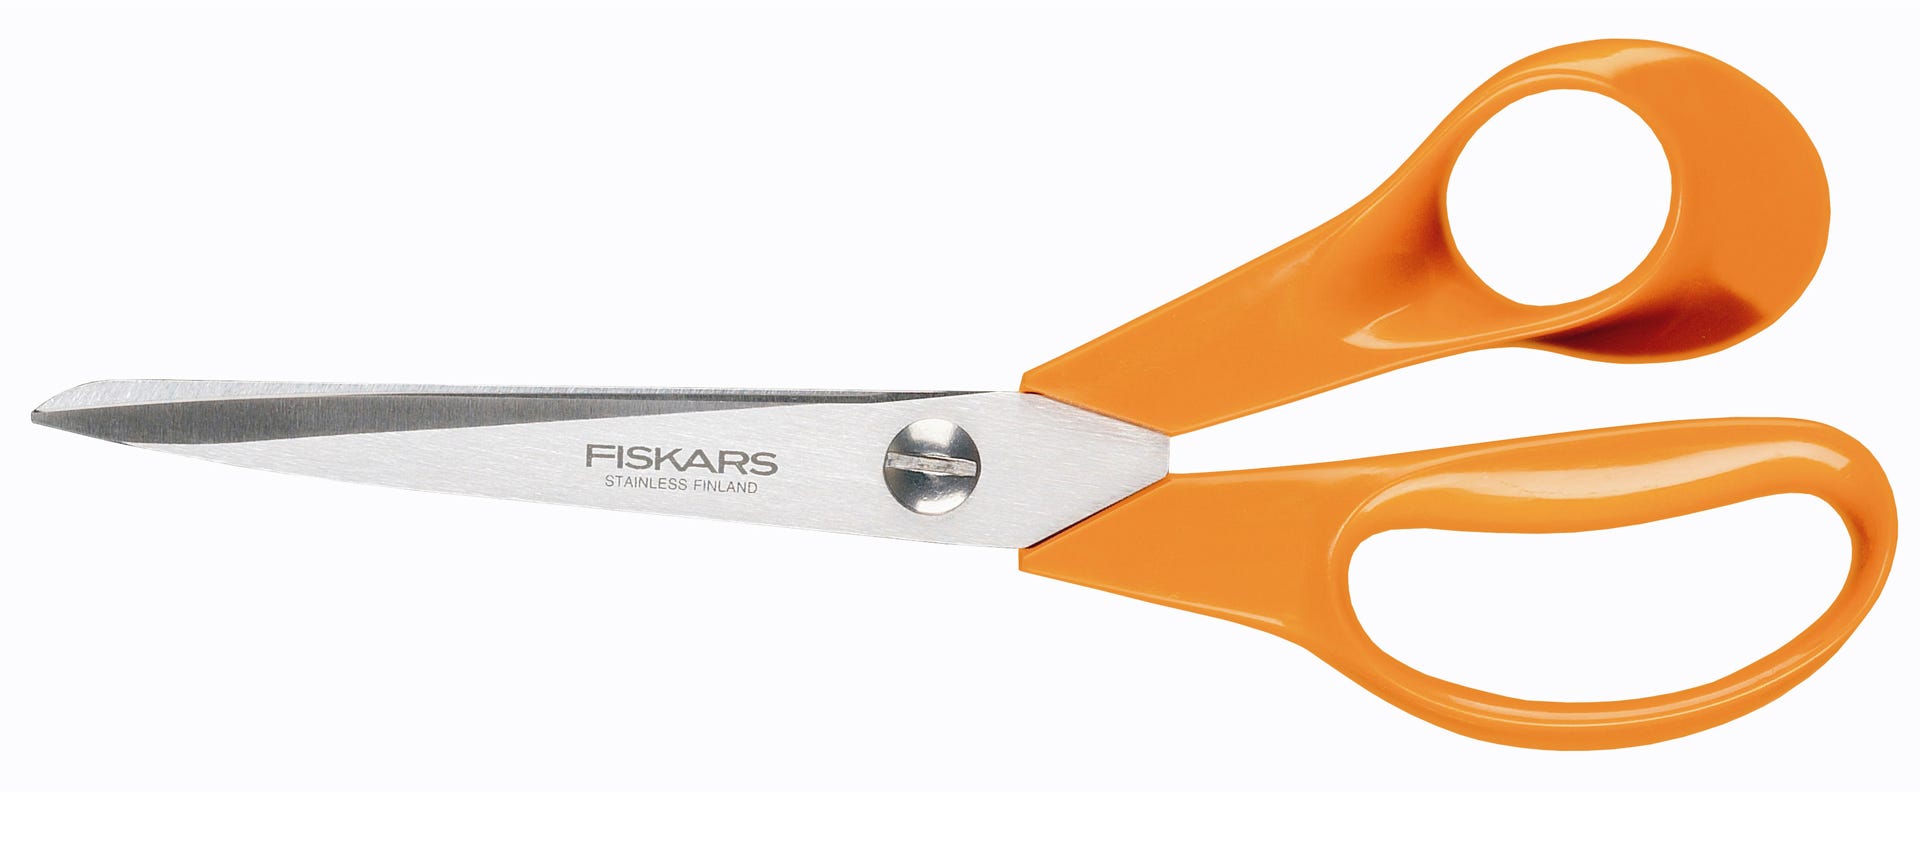 Classic Scissors  Arabia / Firskars